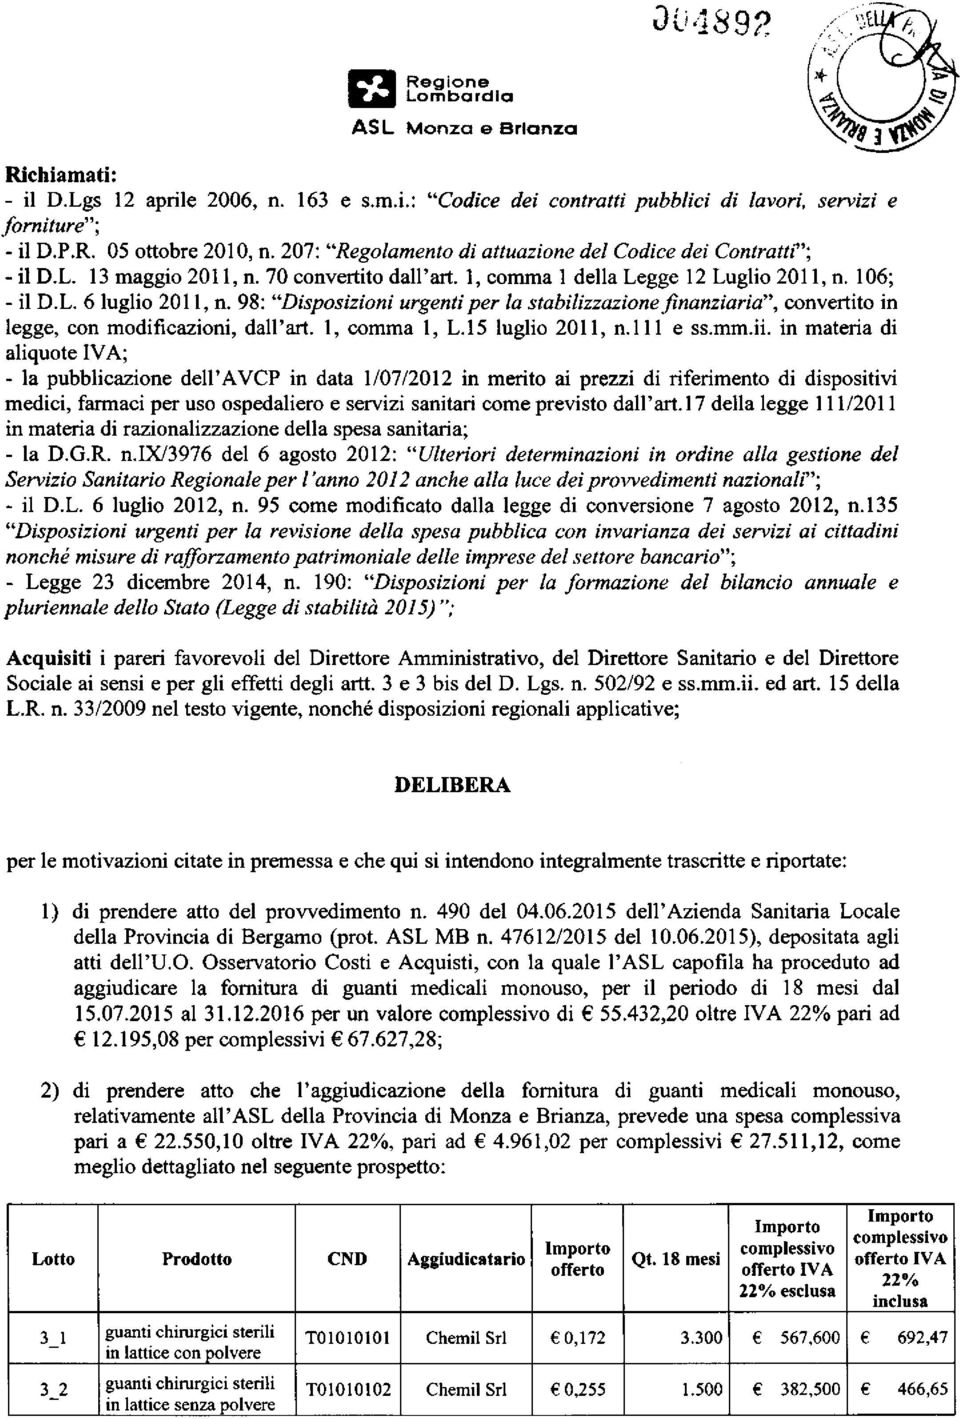 98: "Disposizioni urgenti per la stabilizzazionefinanziaria",convertito in legge, con modificazioni, dall'art. 1, comma 1, L.15 luglio 2011, n.lll e ss.mm.ii.